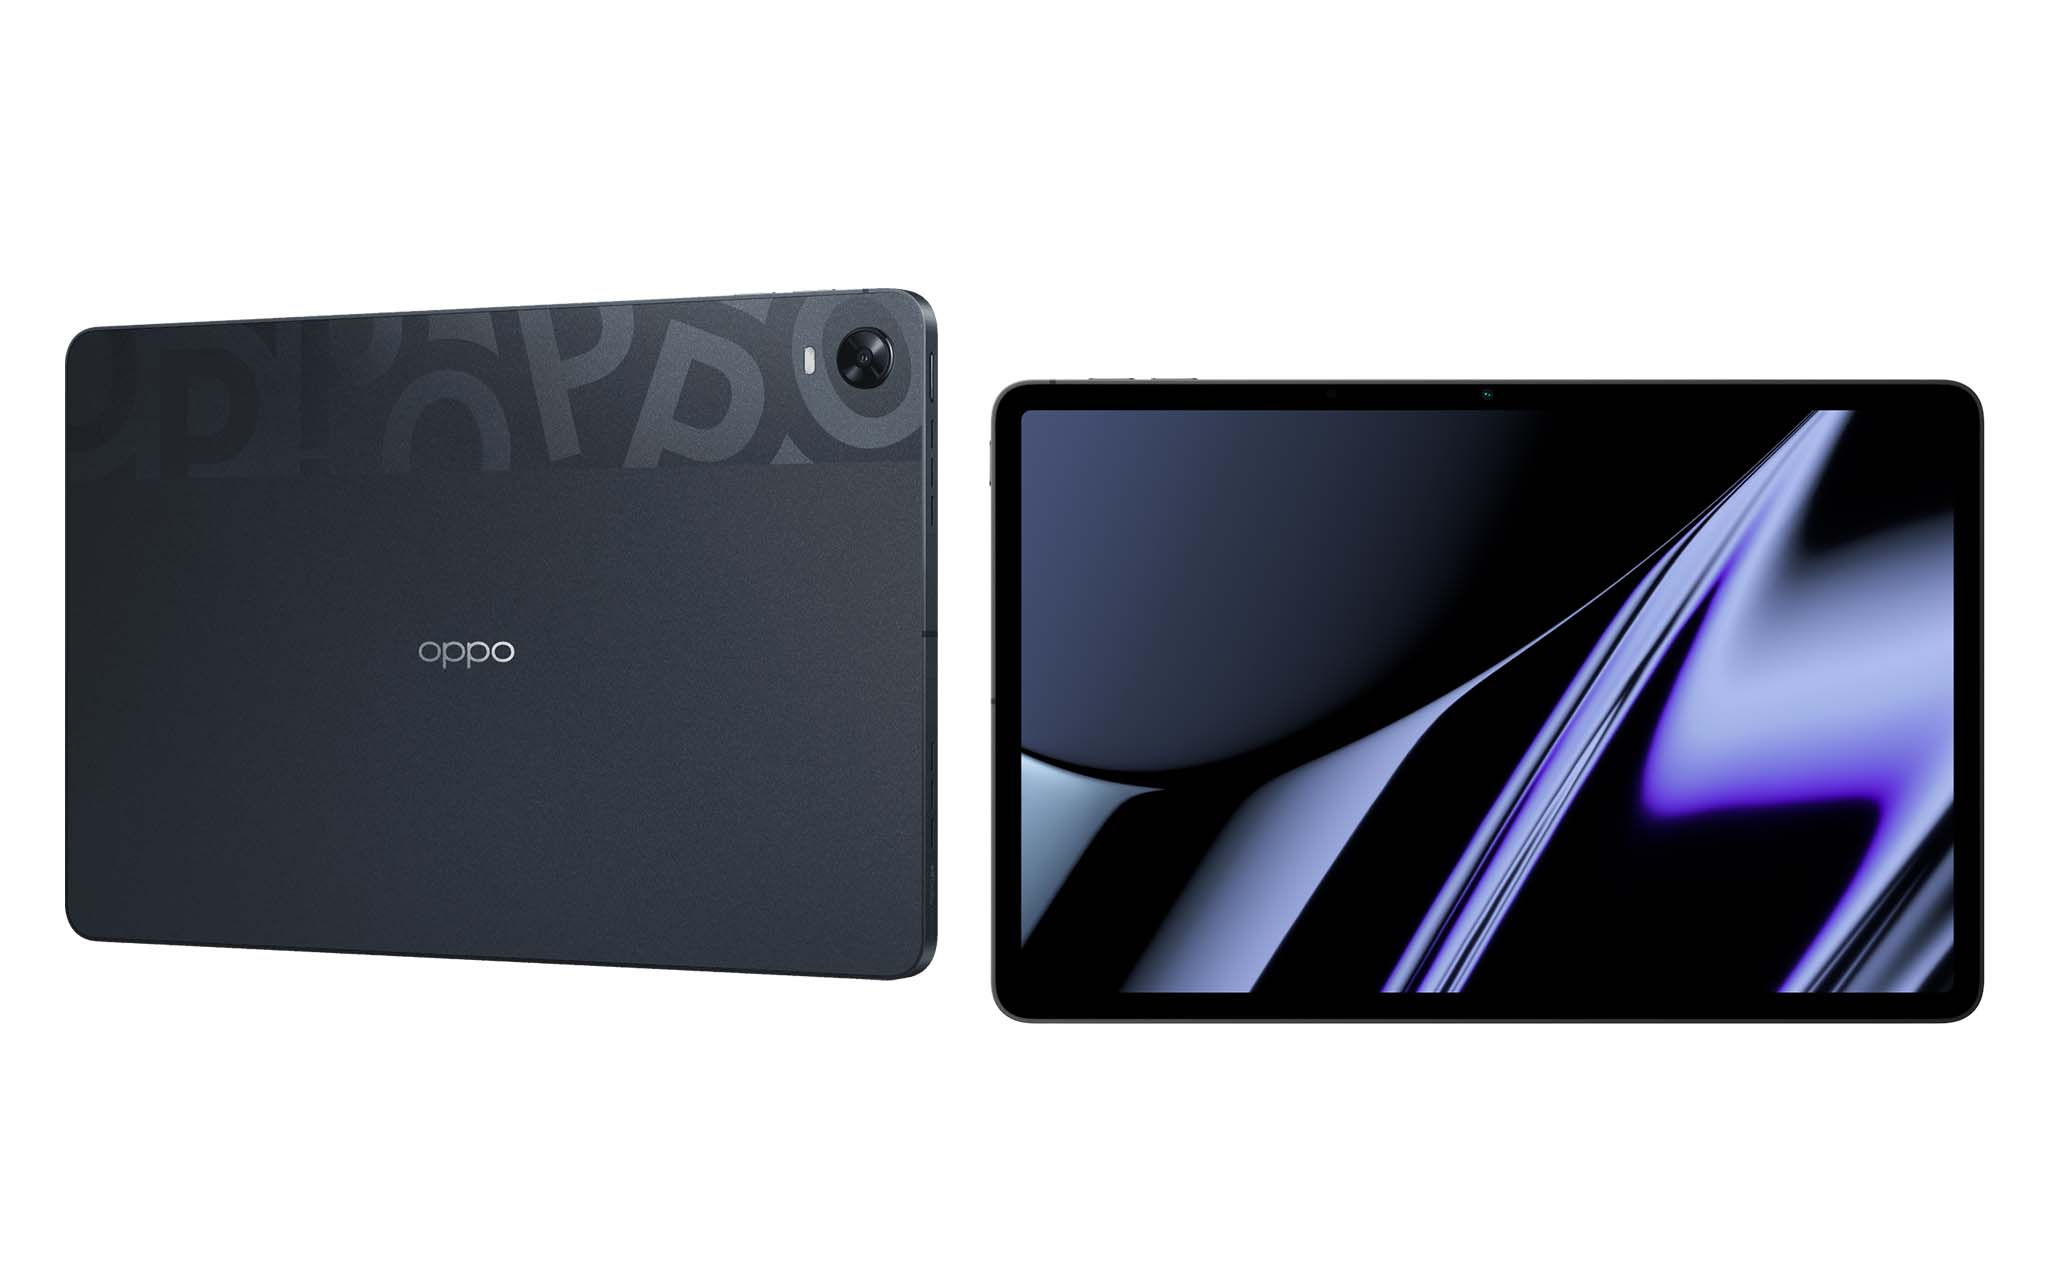 Máy tính bảng OPPO Pad chính thức ra mắt với màn hình 11-inch 2K, hỗ trợ bút và dùng vi xử lý Snapdragon 870